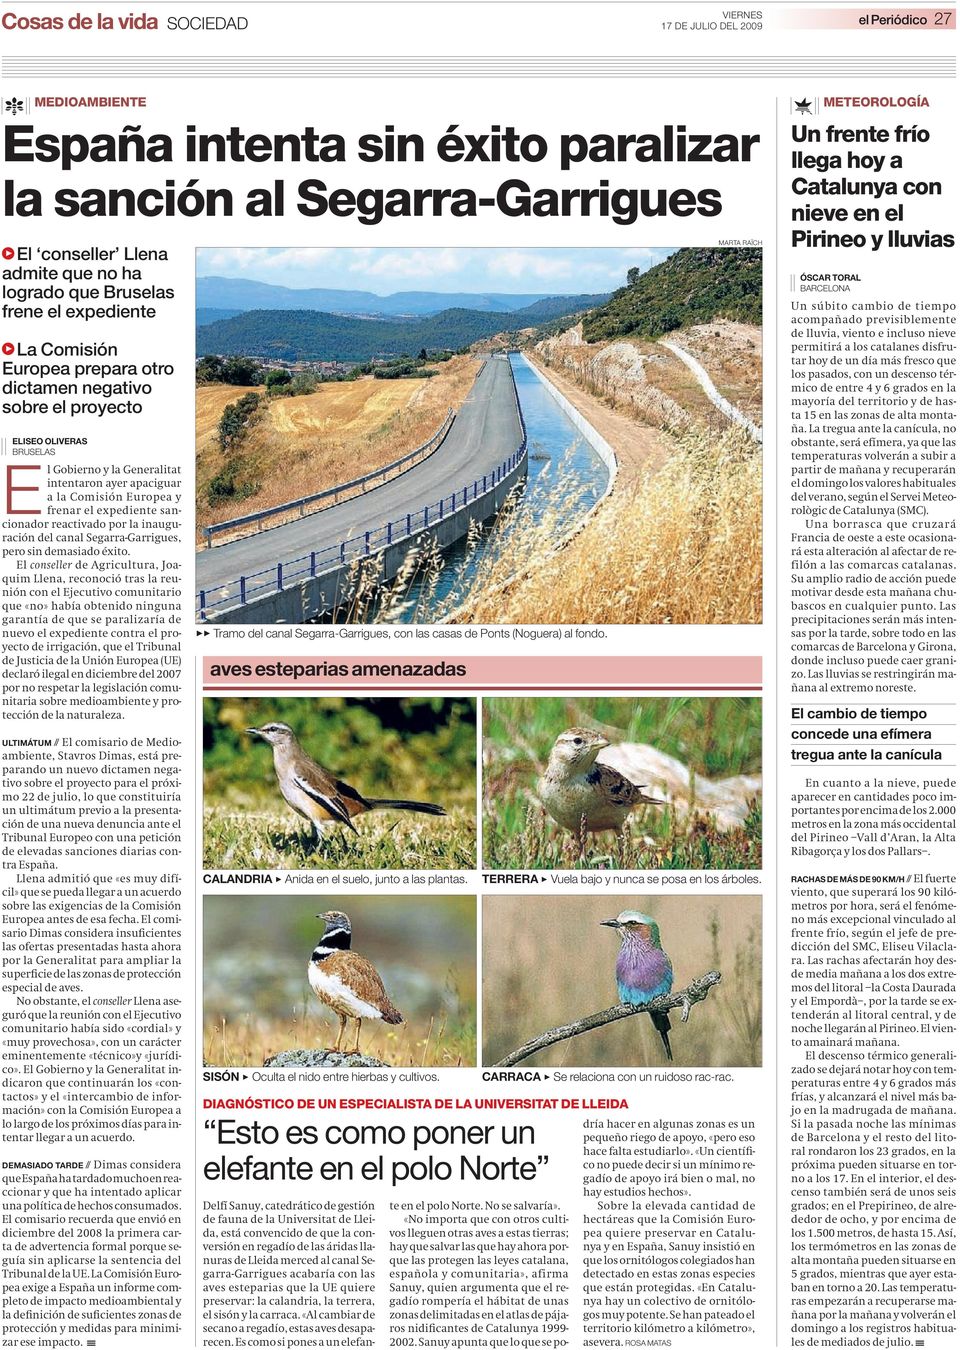 expediente sancionador reactivado por la inauguración del canal Segarra-Garrigues, pero sin demasiado éxito.